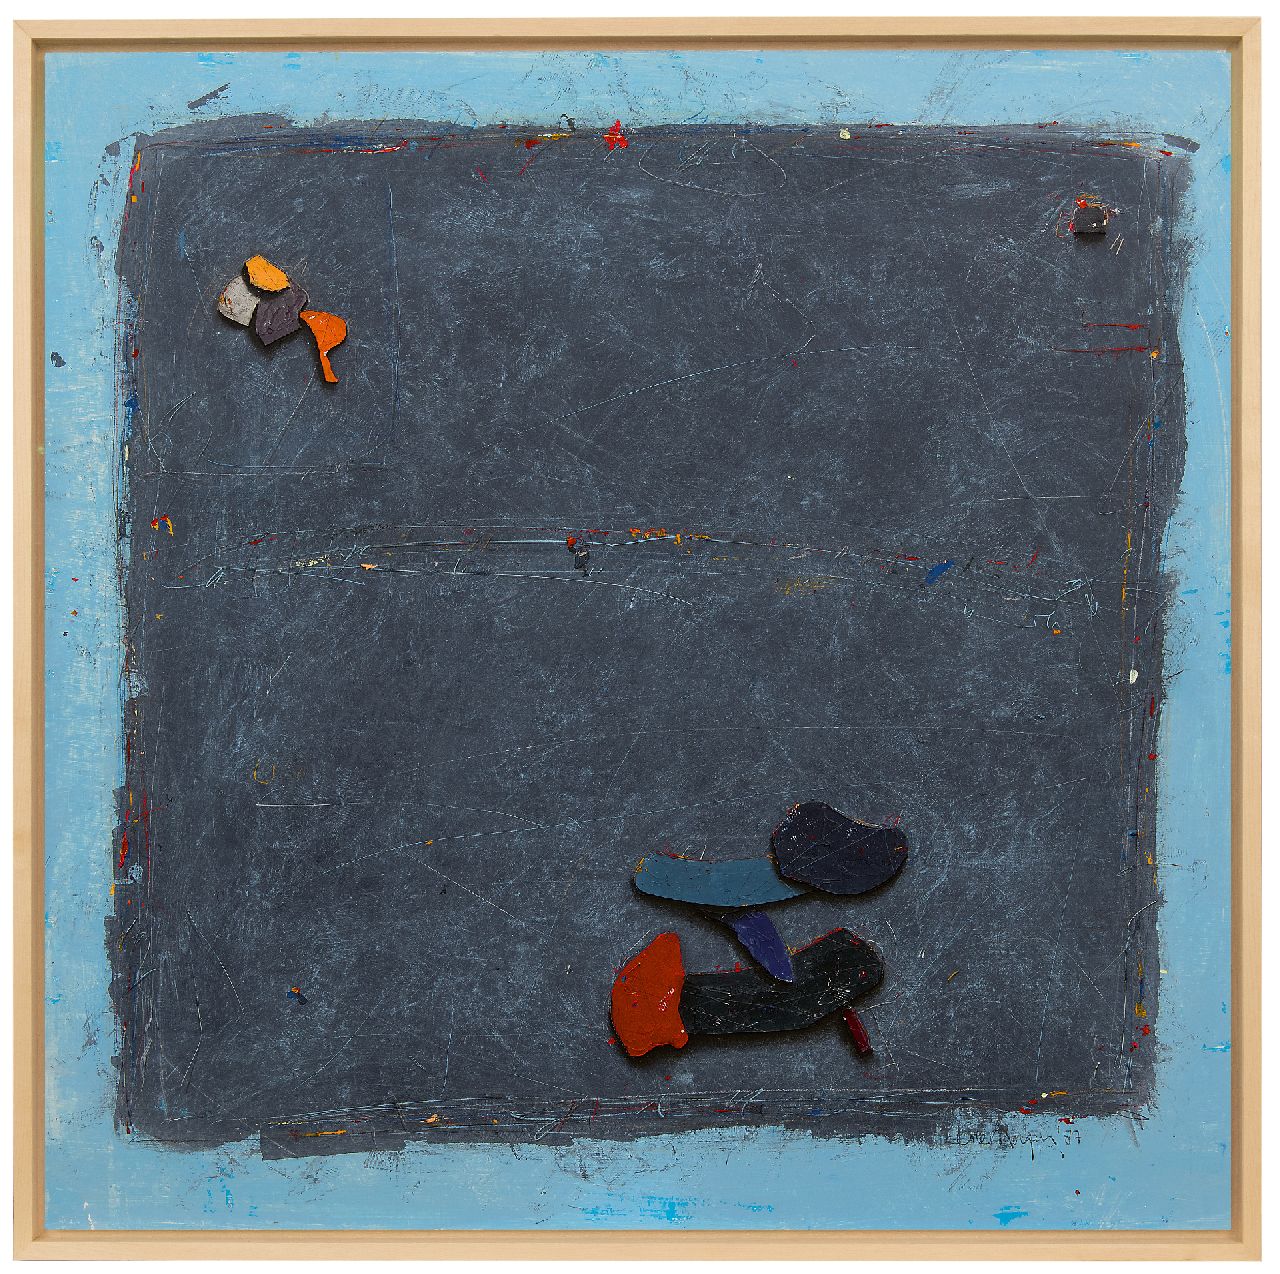 Morgan C.  | Cole Morgan | Aquarellen en tekeningen te koop aangeboden | Black board, gemengde techniek en collage op papier 99,0 x 99,0 cm, gesigneerd rechtsonder en gedateerd '87